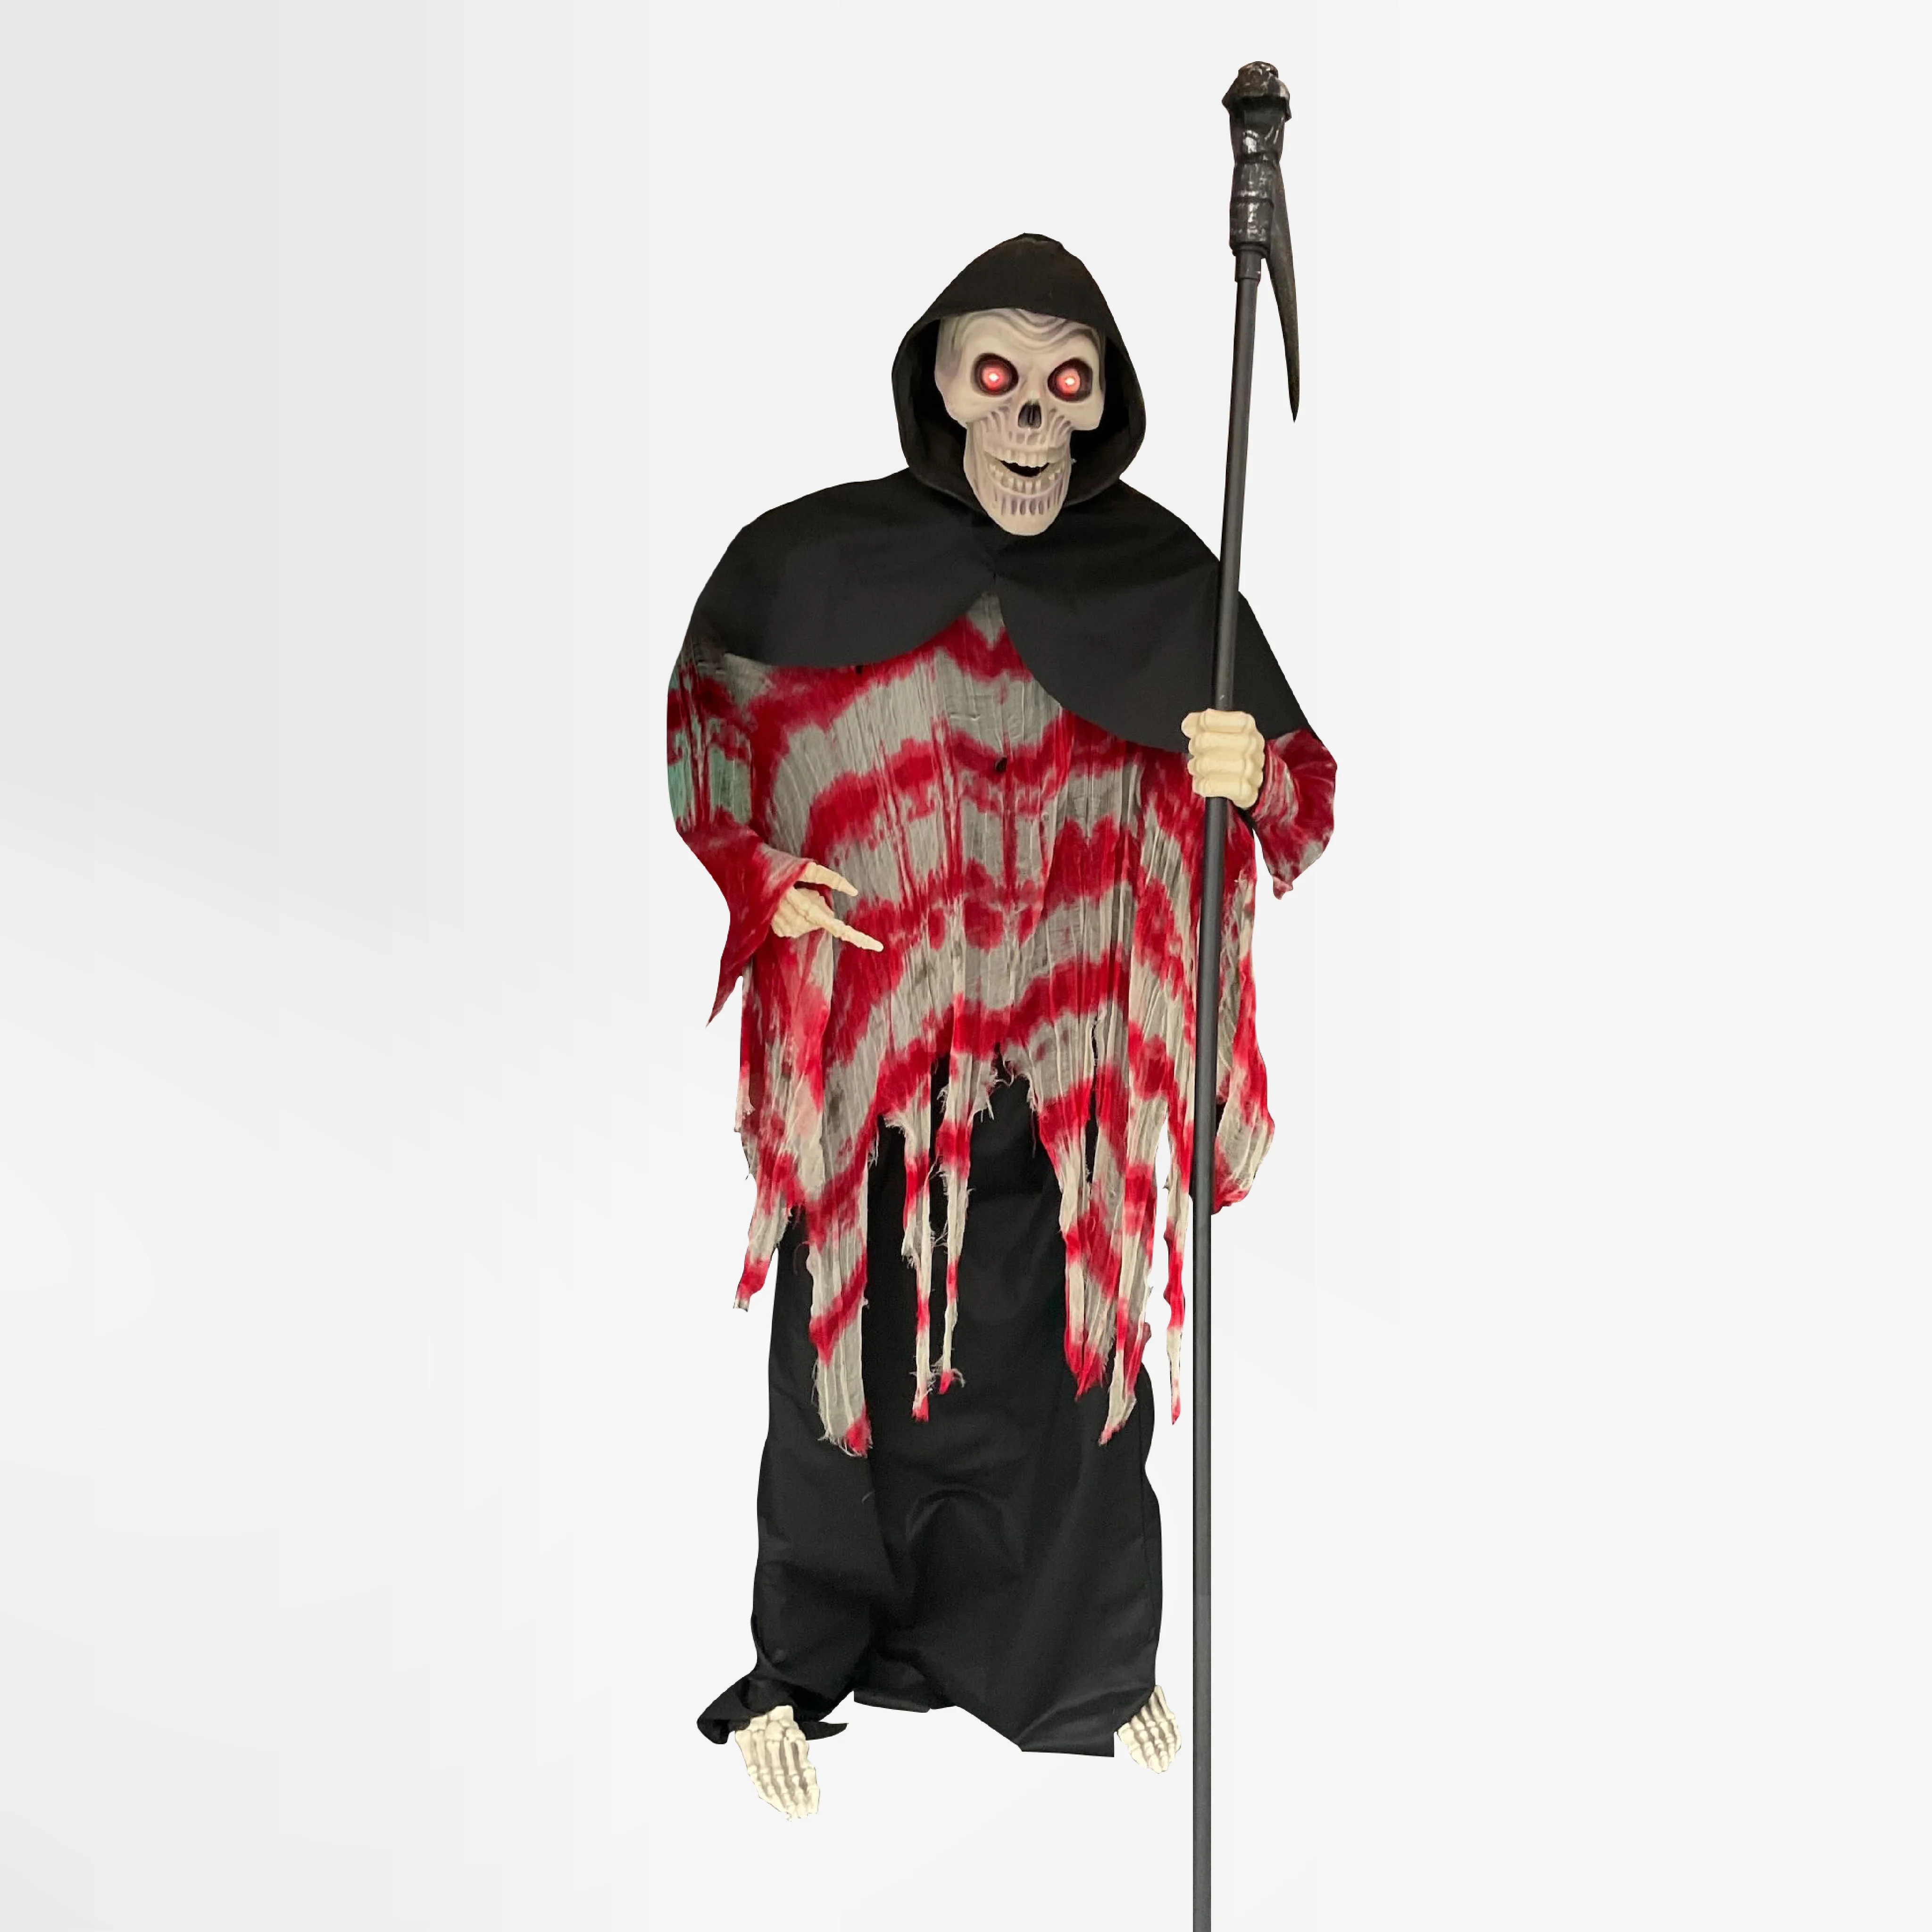 Halloween Dekor Süs Kırmızı Pelerinli Işıklı ve Sesli Ölüm Meleği 200cm